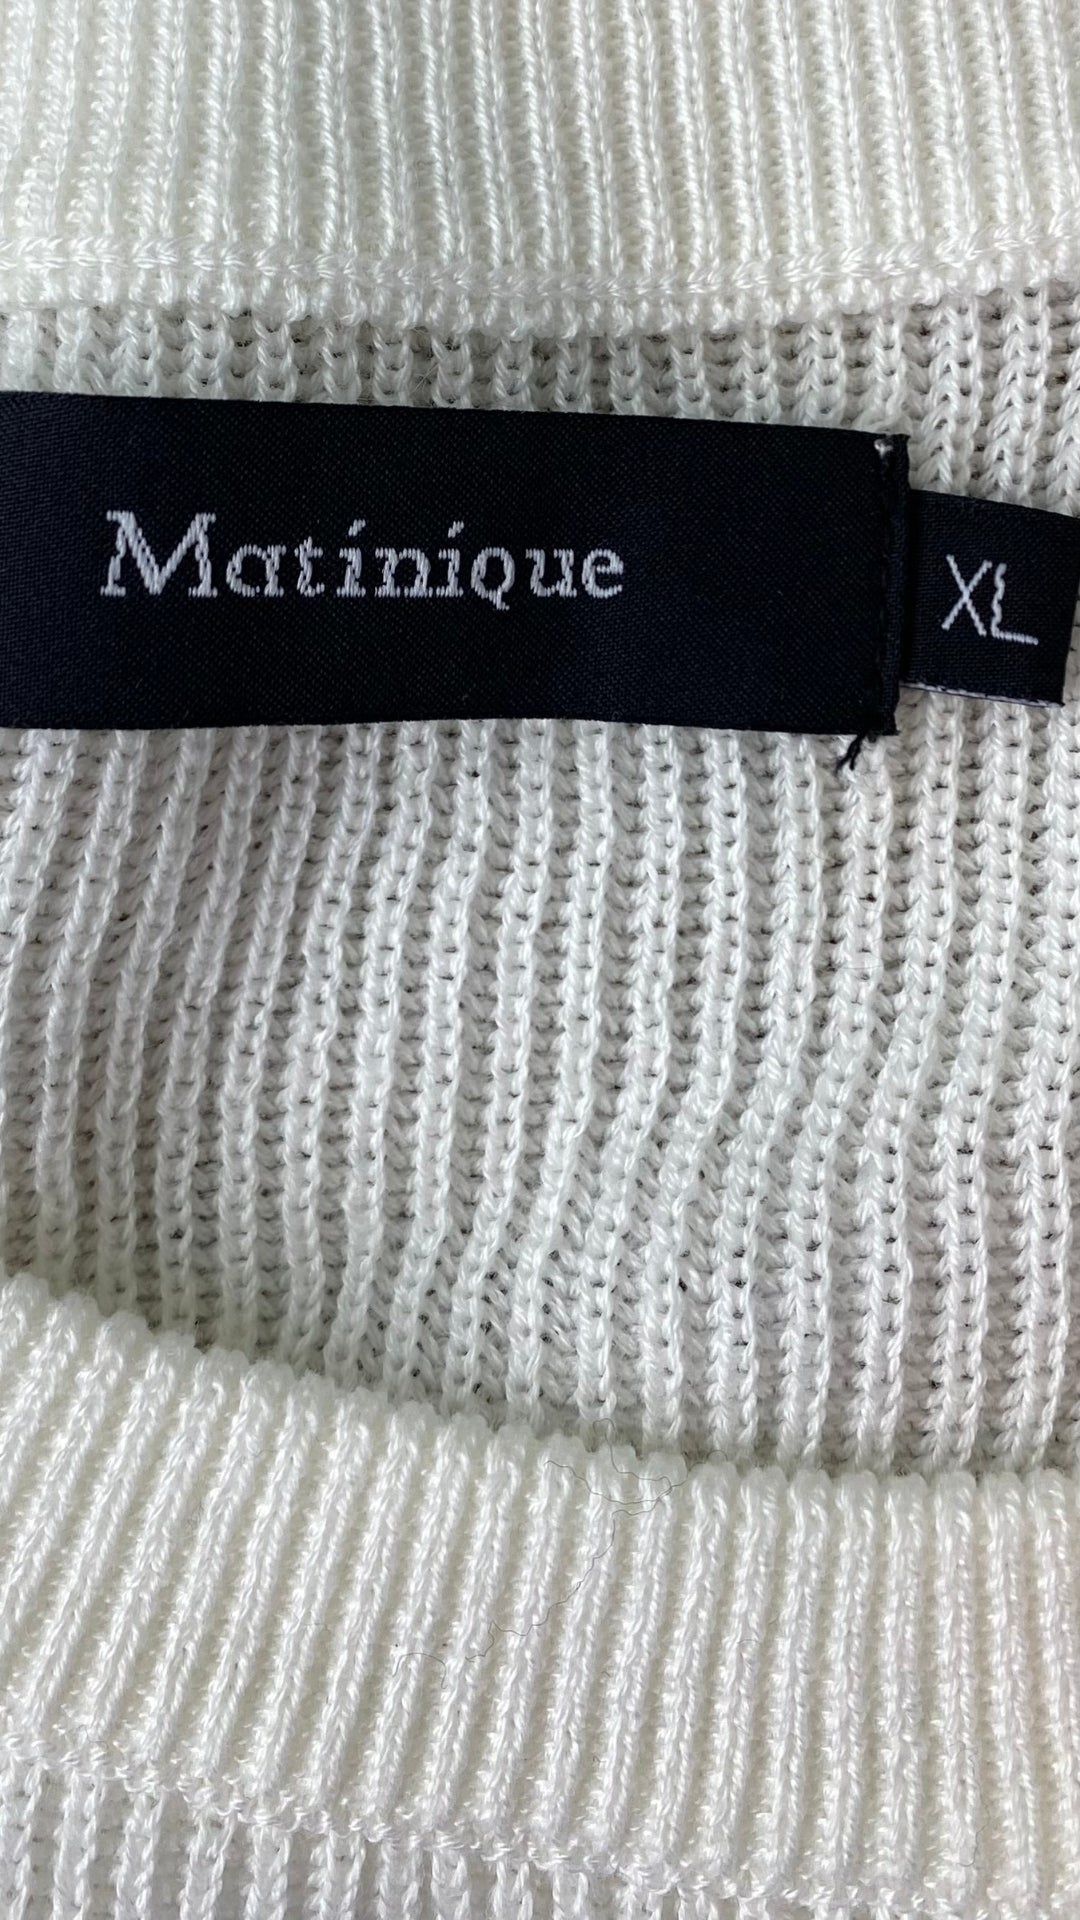 Chandail manche raglan en tricot de coton Matinique, taille xl. Vue de l'étiquette de marque et taille.